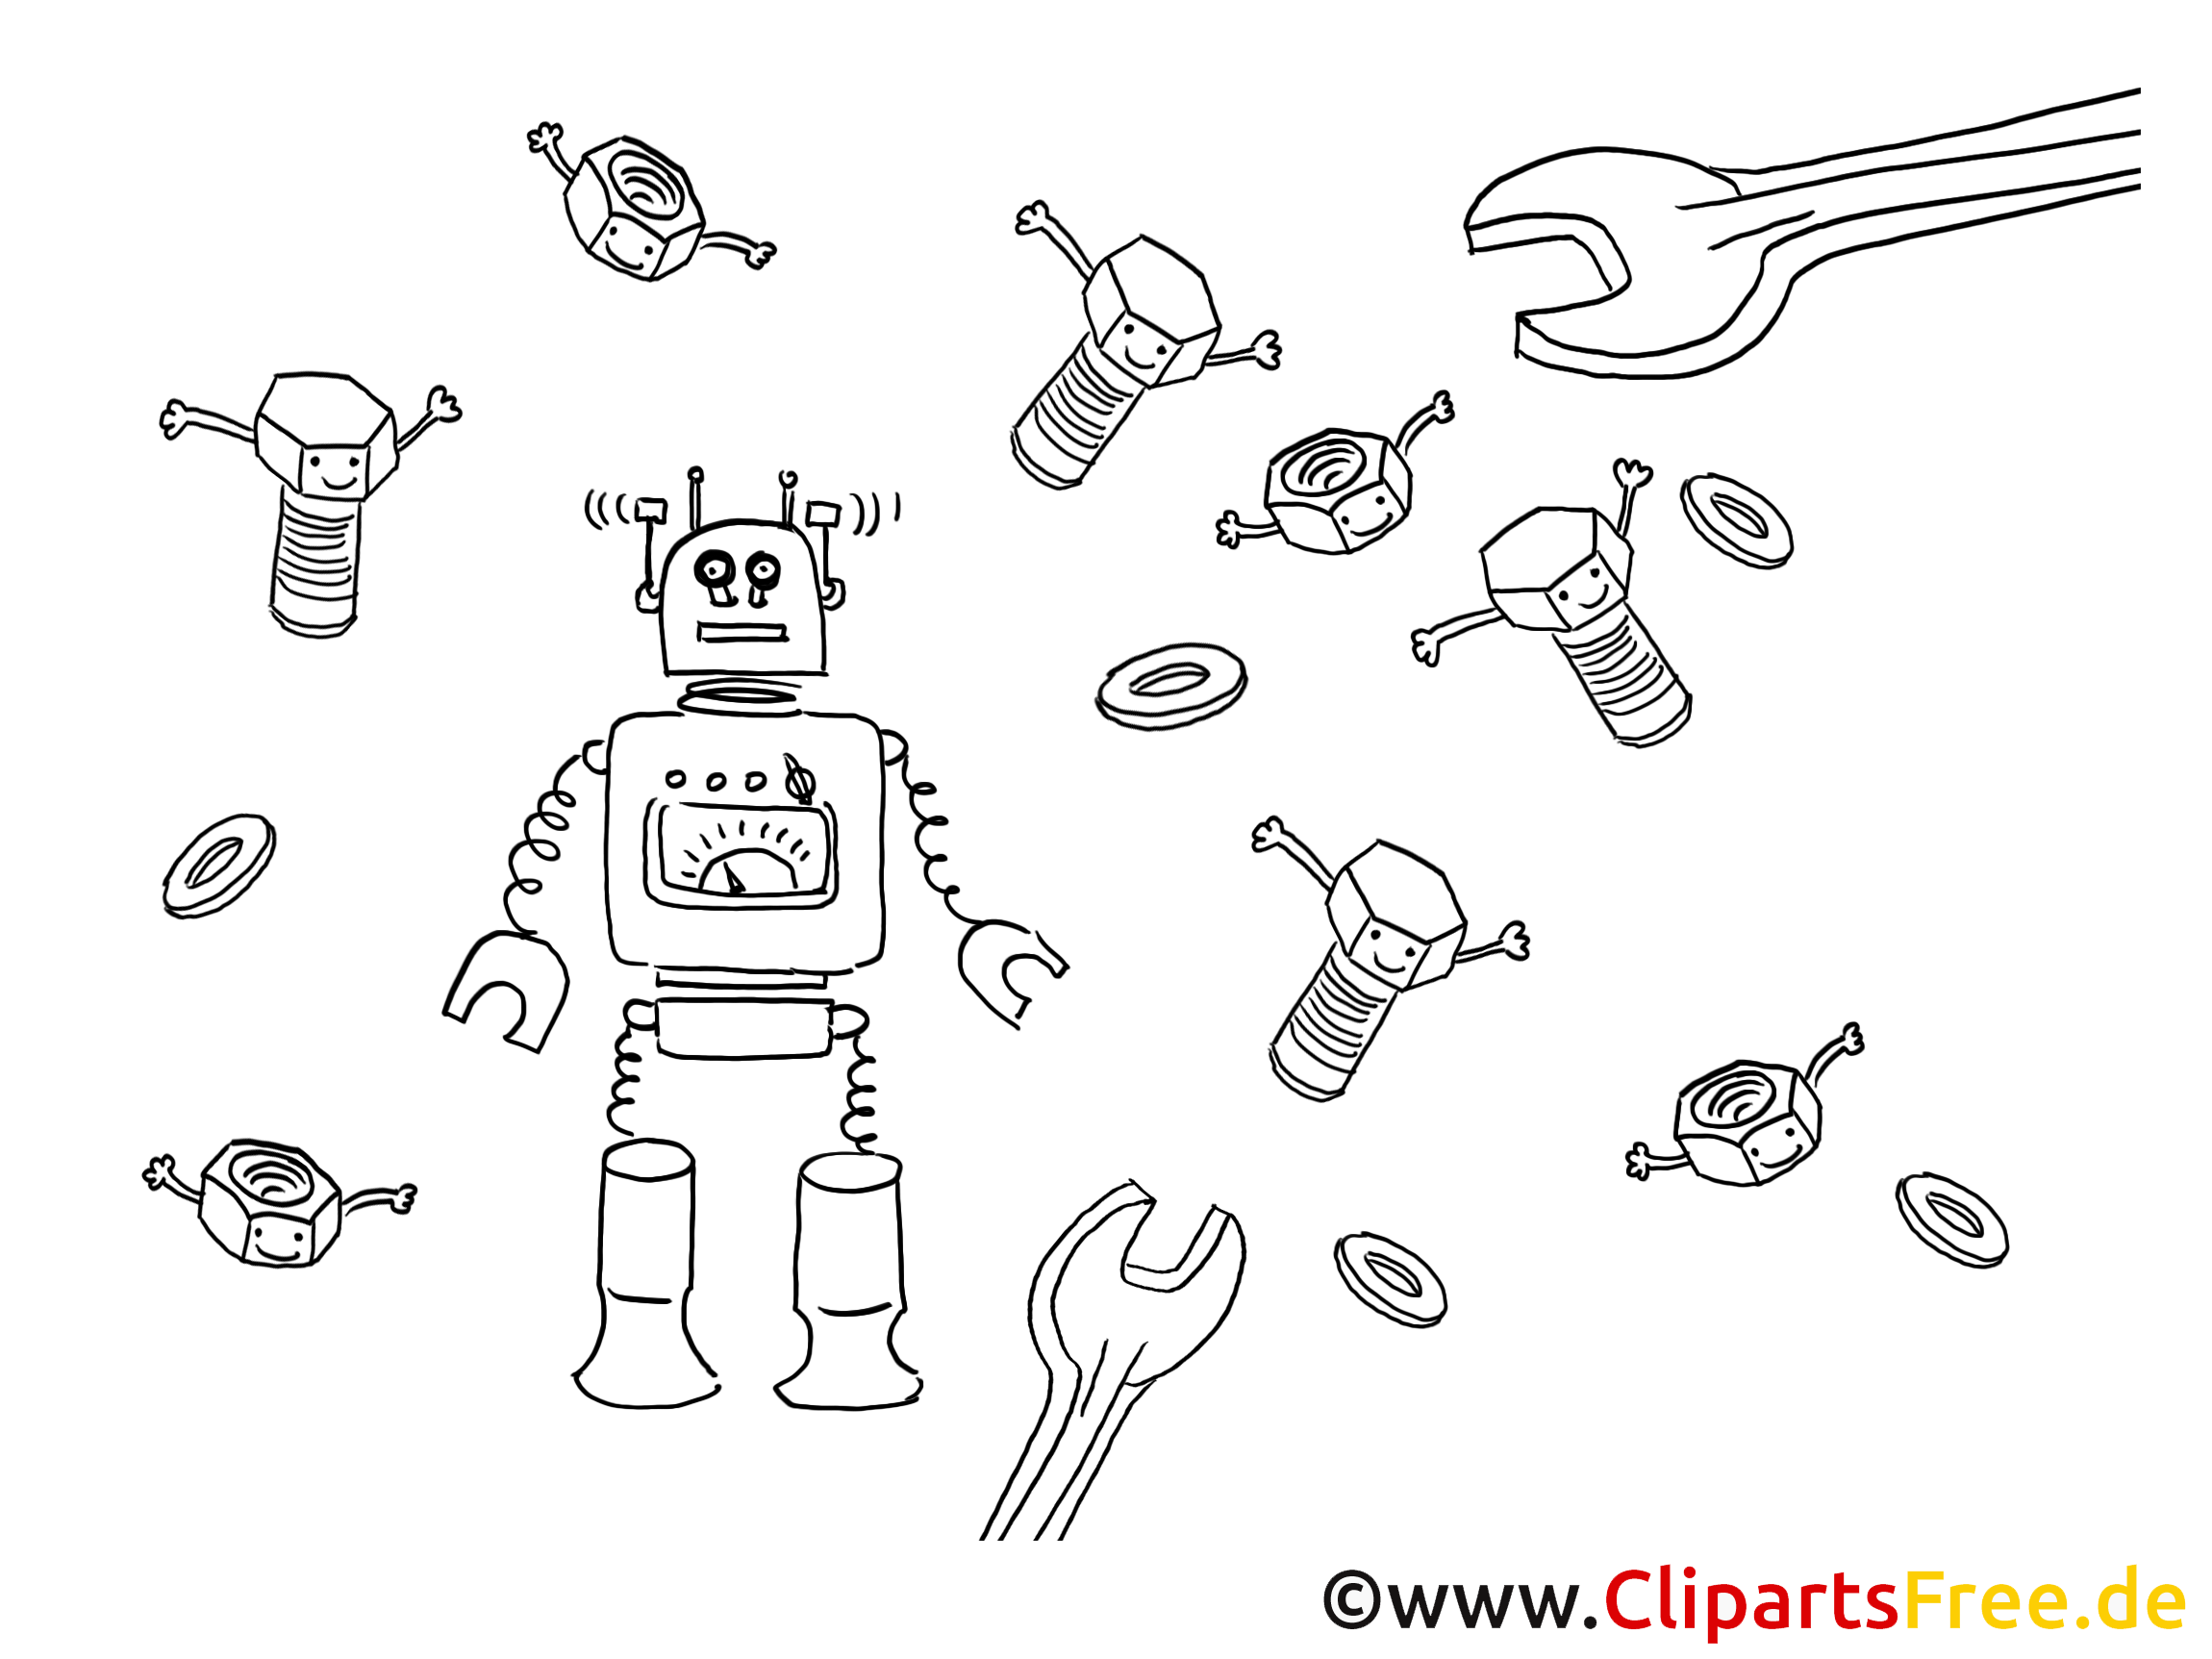 clipart robot gratuit - photo #14